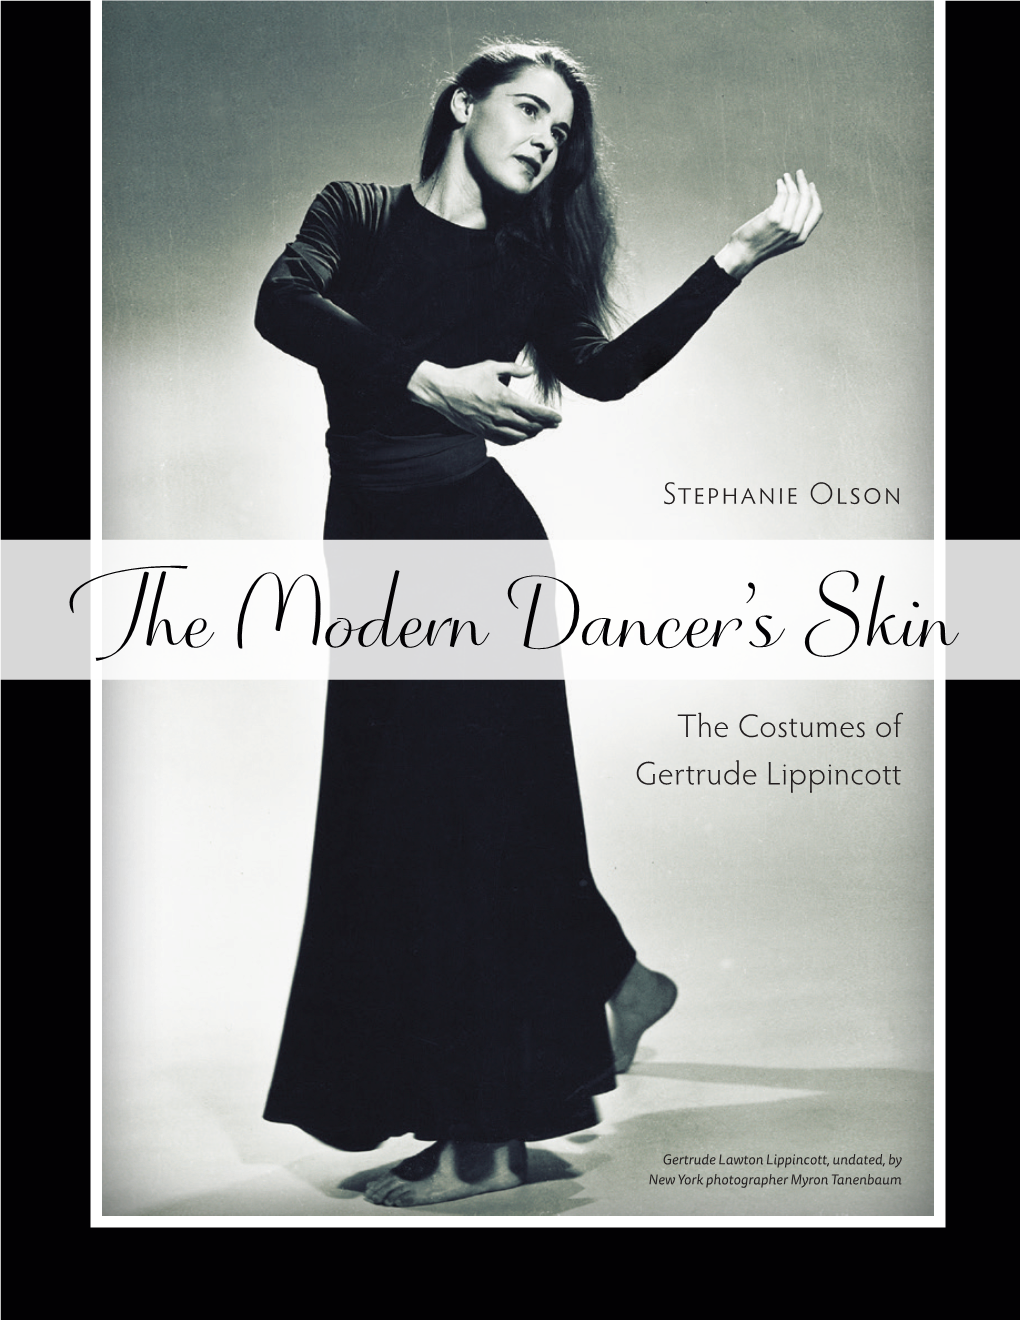 The Modern Dancer's Skin